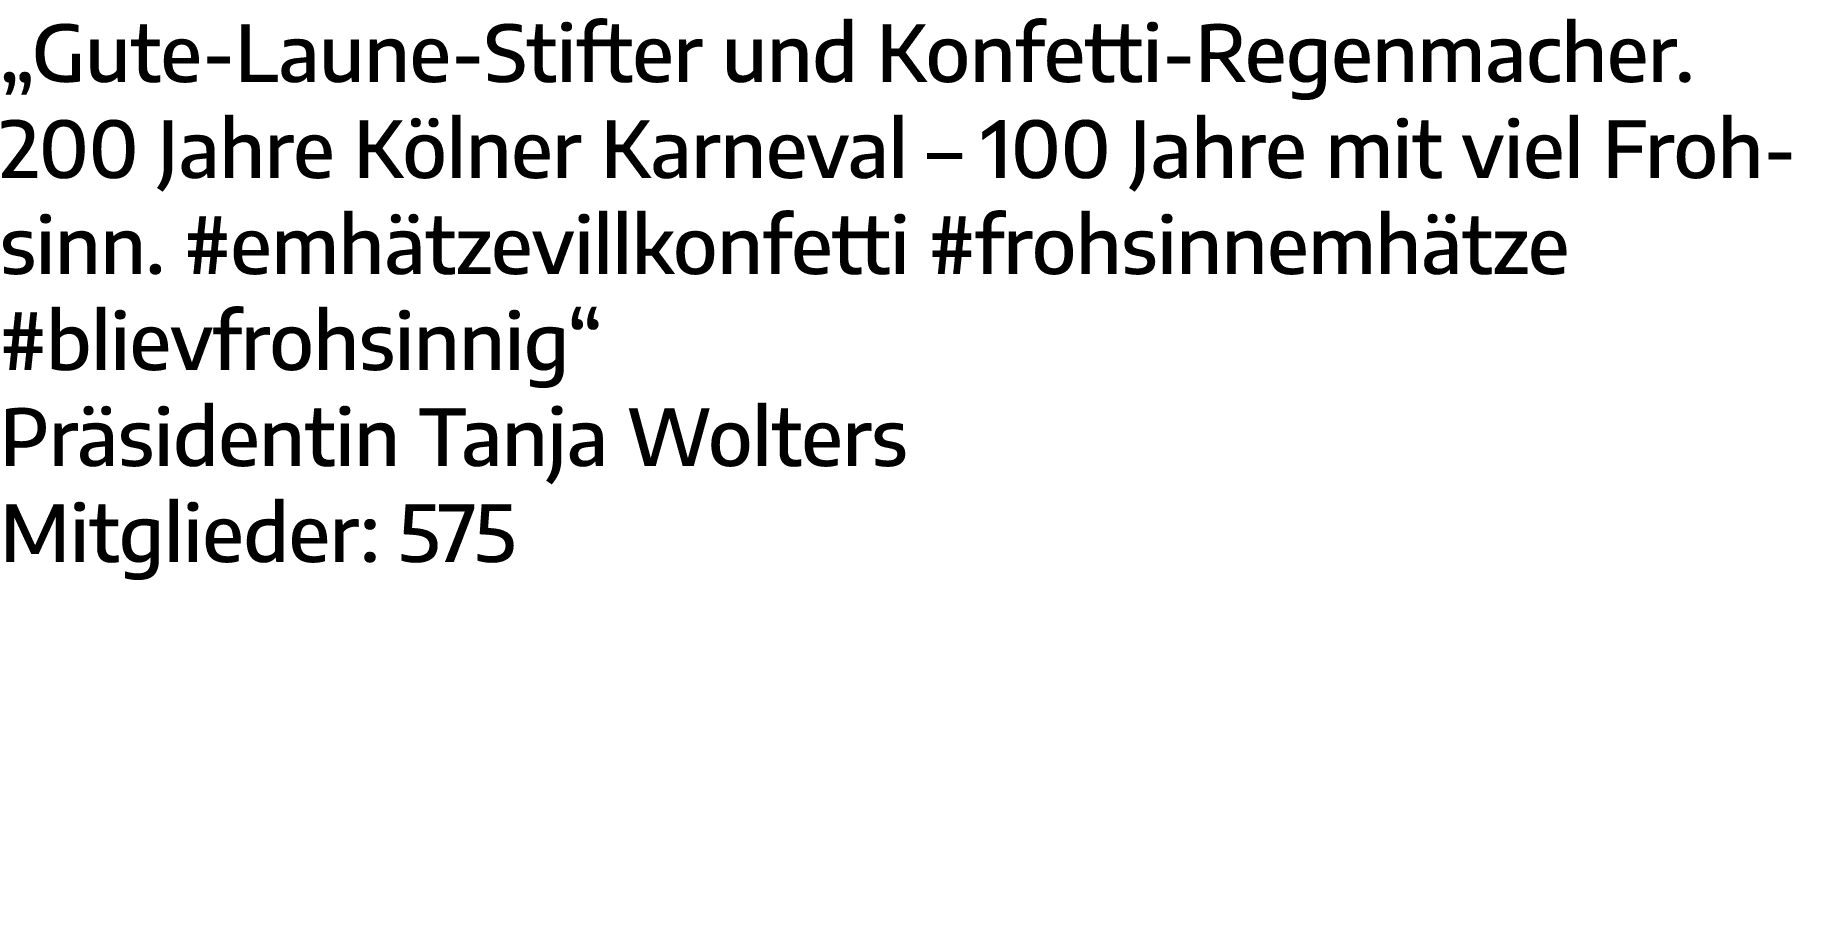  Gute-Laune-Stifter und Konfetti-Regenmacher  200 Jahre Kölner Karneval   100 Jahre mit viel Frohsinn  #emhätzevillko   